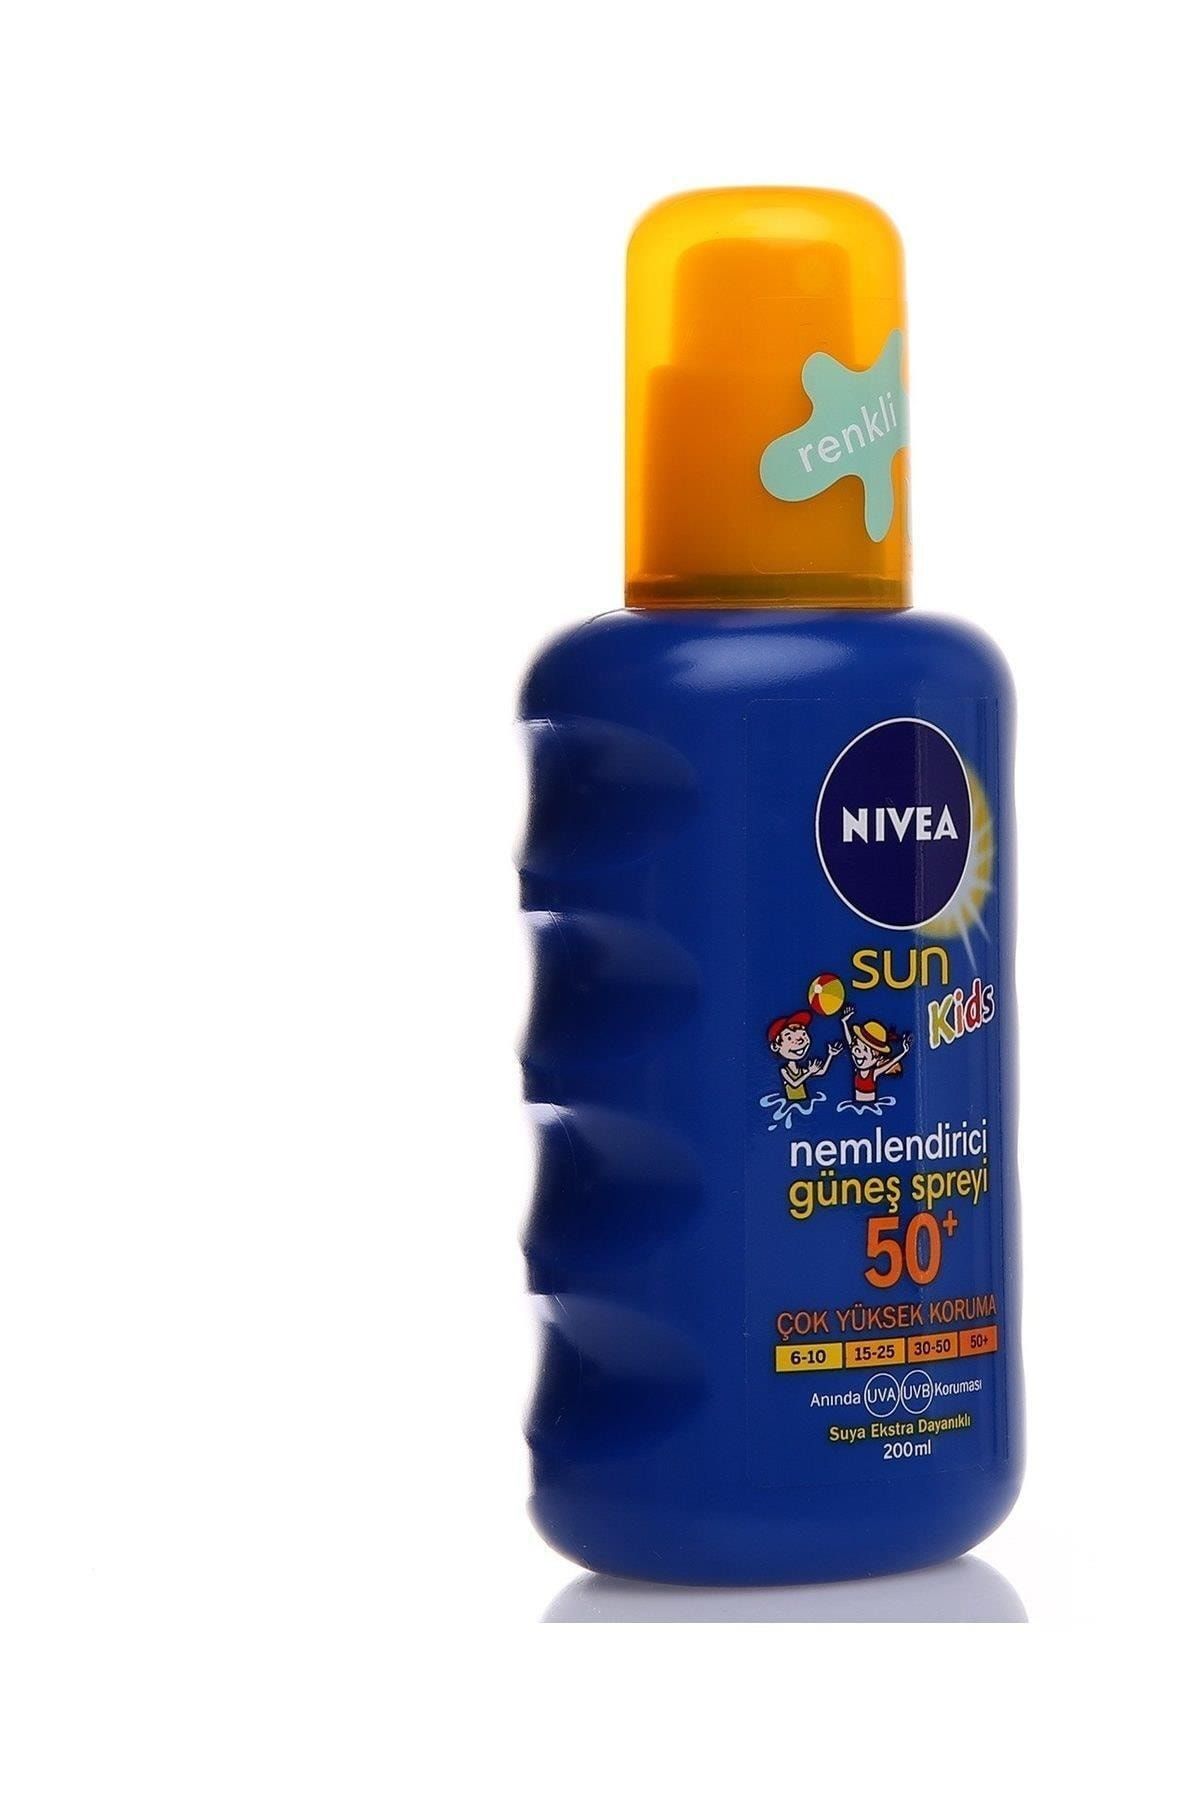 NIVEA کرم ضد آفتاب کودکانه با SPF50+ 200ml